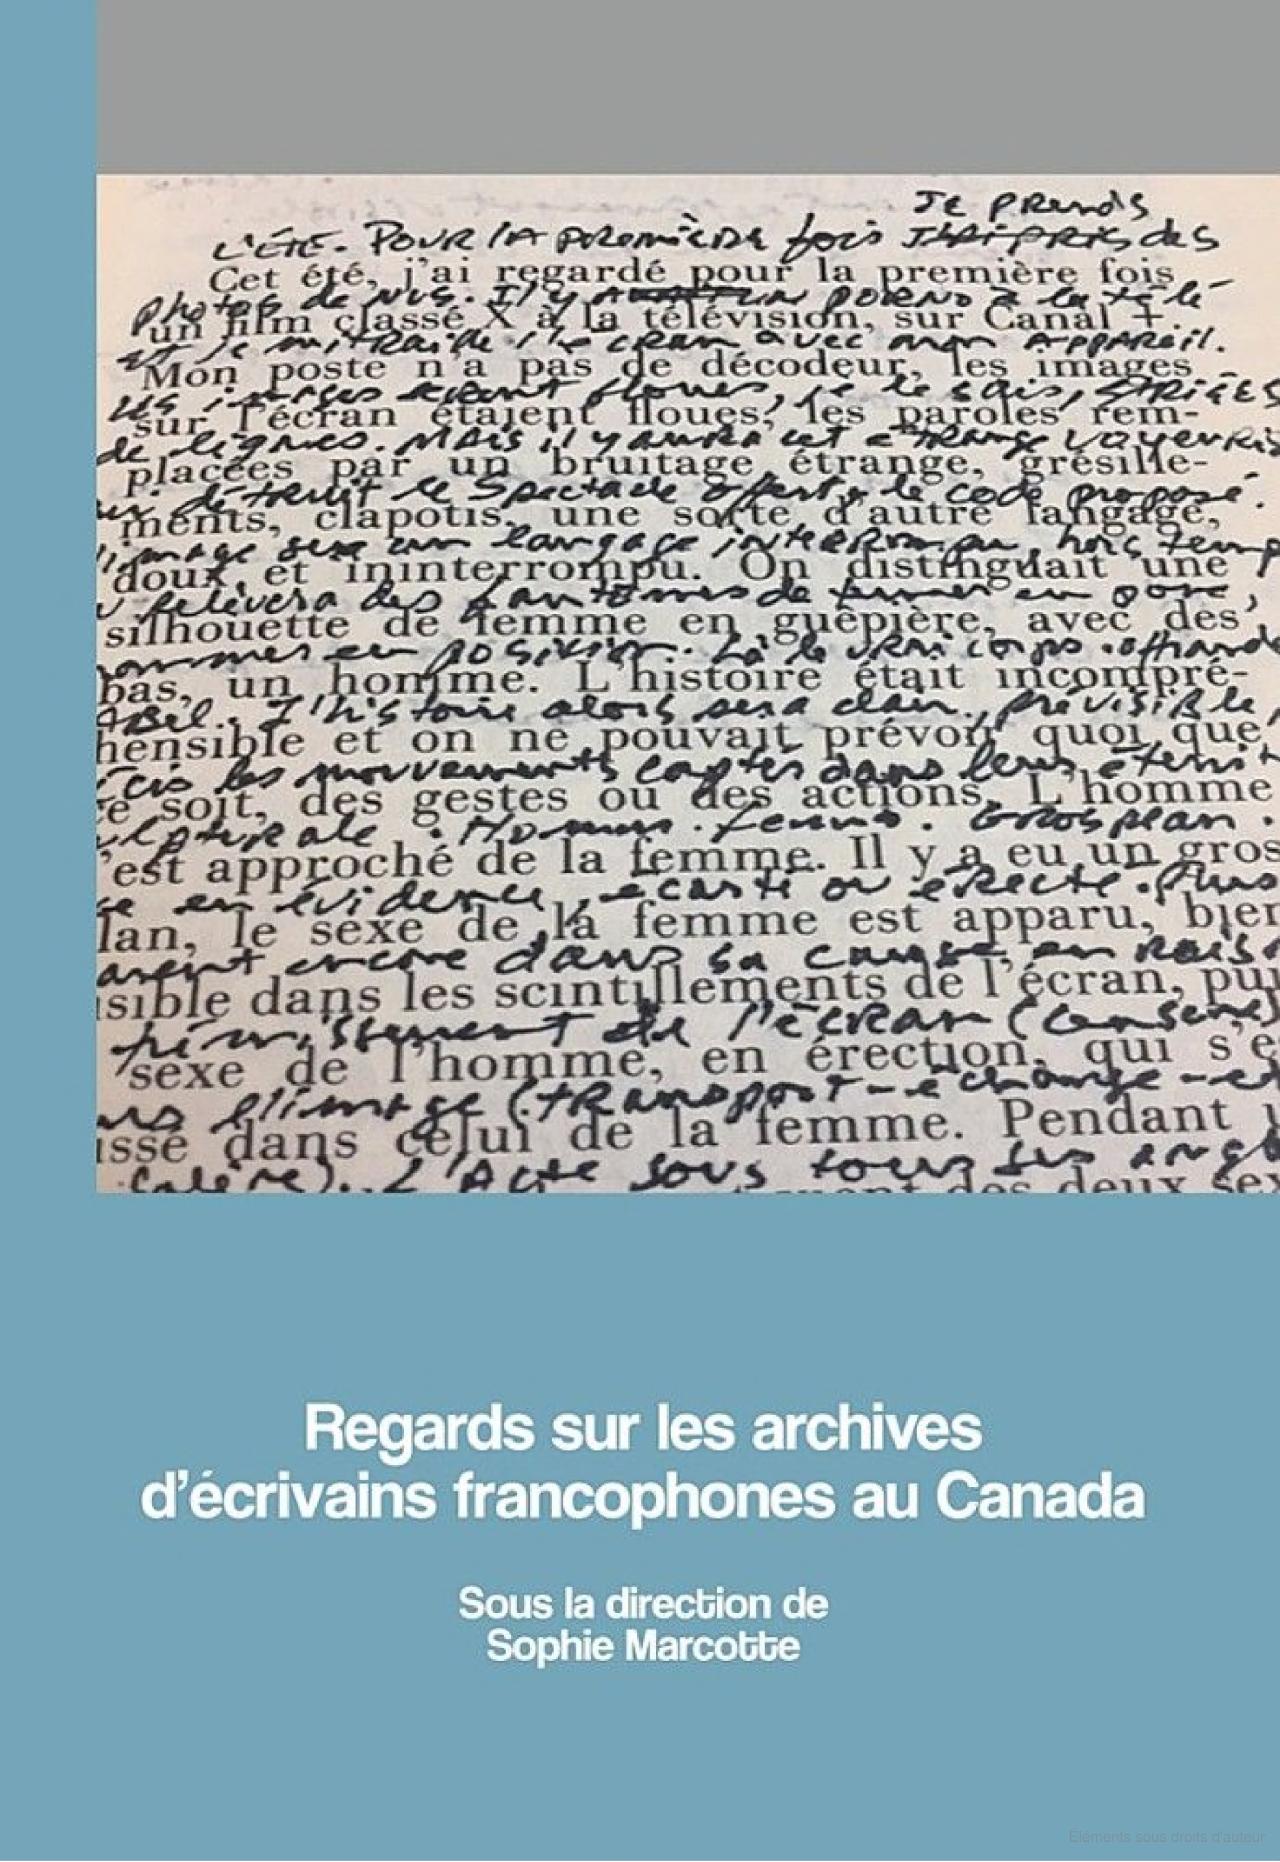 Tome XVII - Regards sur les archives d’écrivains francophones au Canad